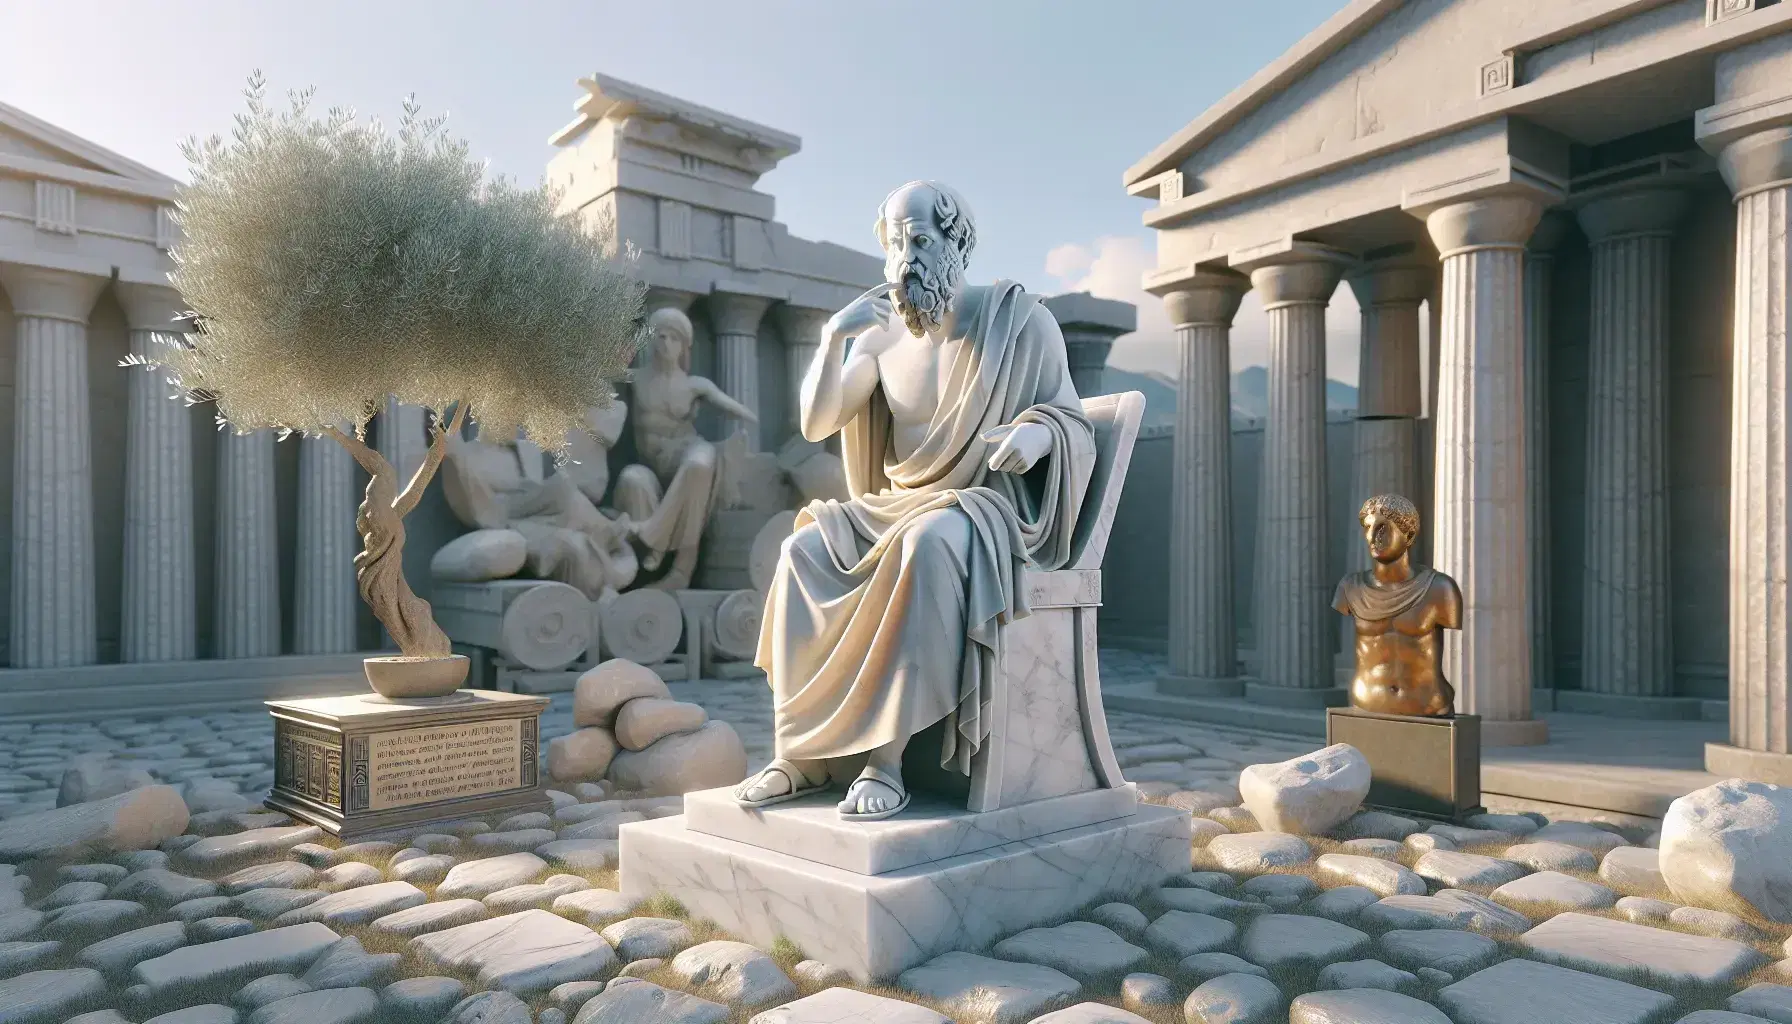 Estatua de mármol de Sócrates pensativo con mano izquierda alzada en una antigua ágora griega, con réplica del Templo de Apolo y olivo bajo cielo azul.